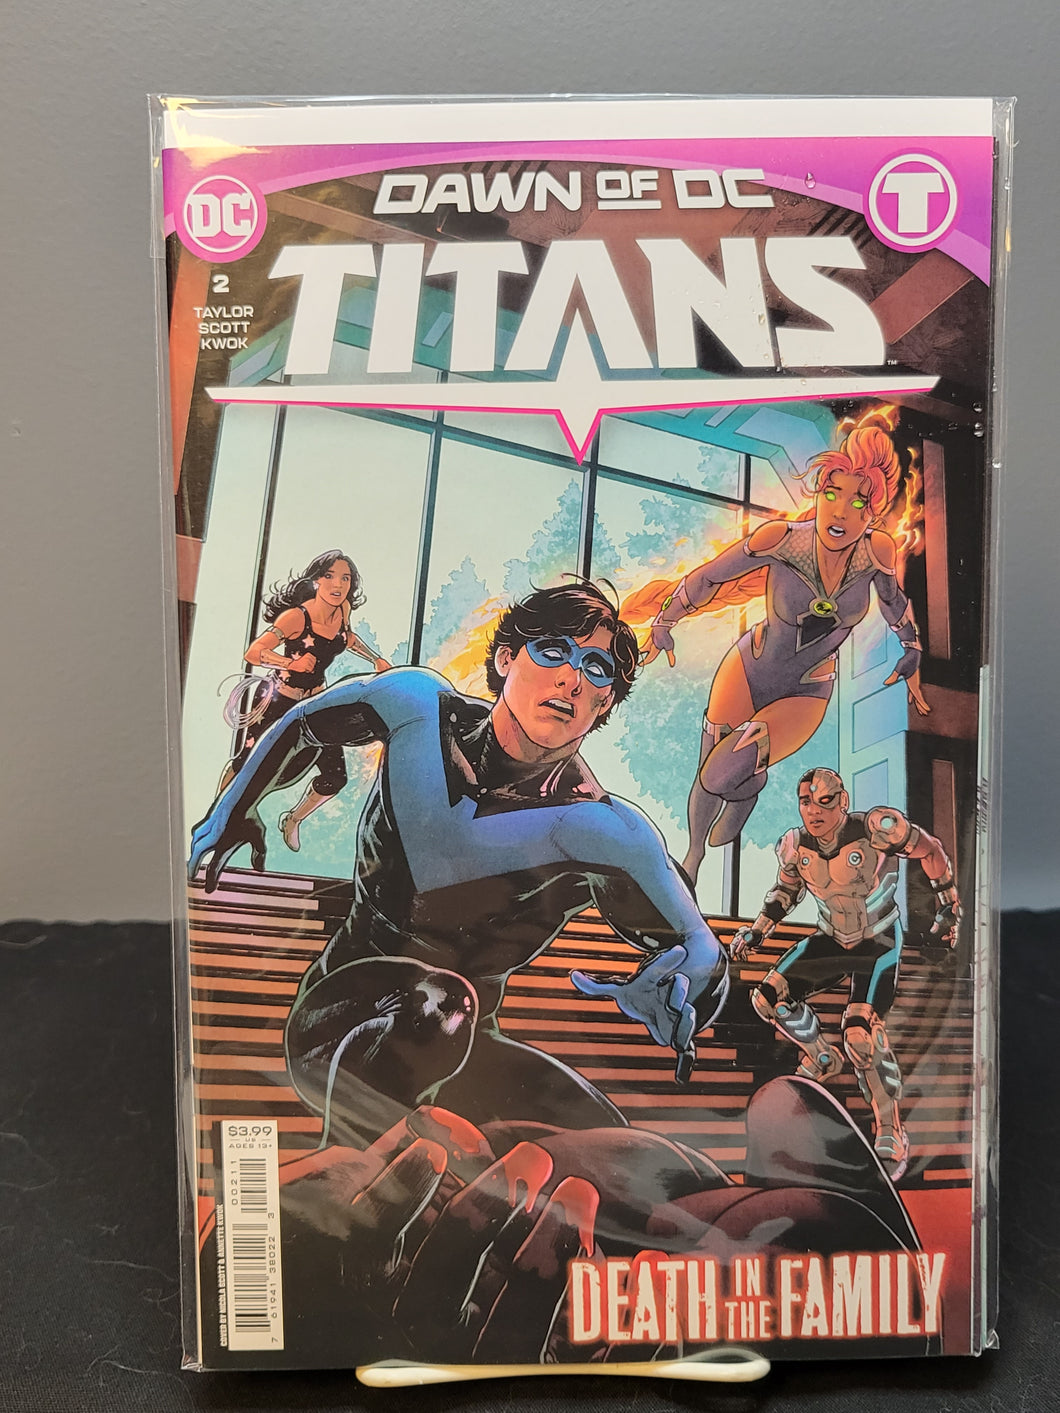 Titans #2